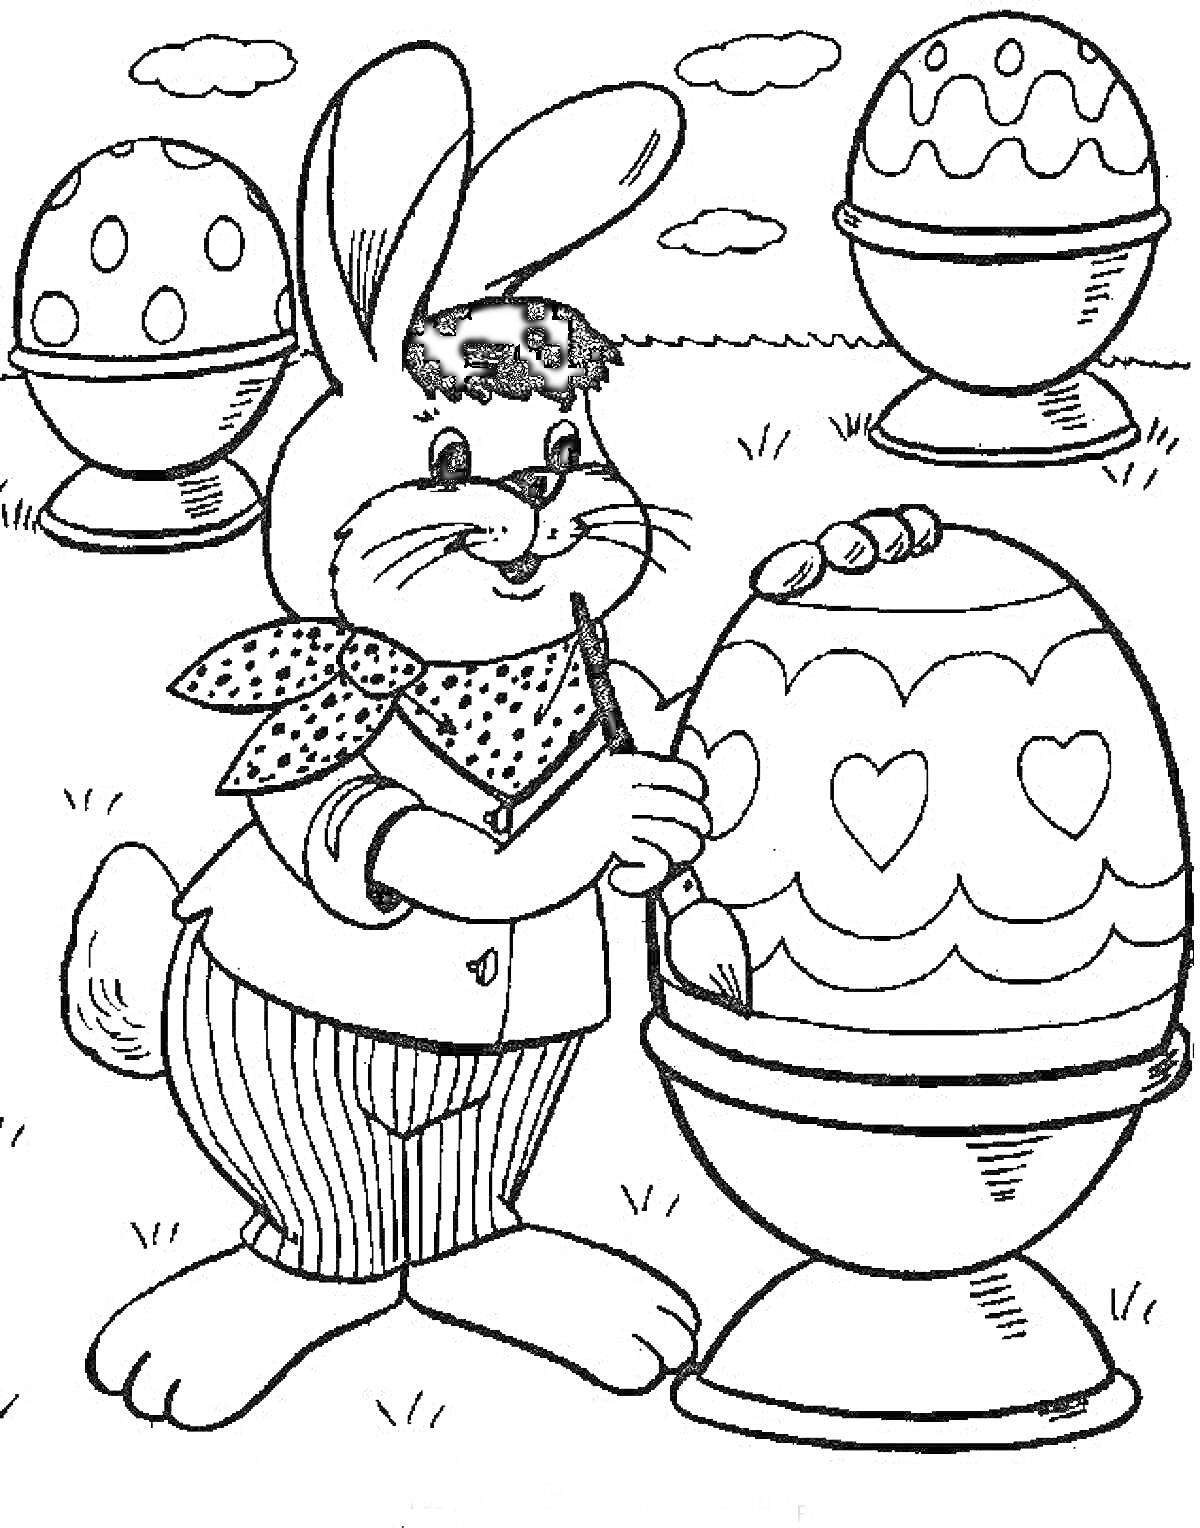 Раскраска Кролик расписывает пасхальные яйца на траве среди облаков